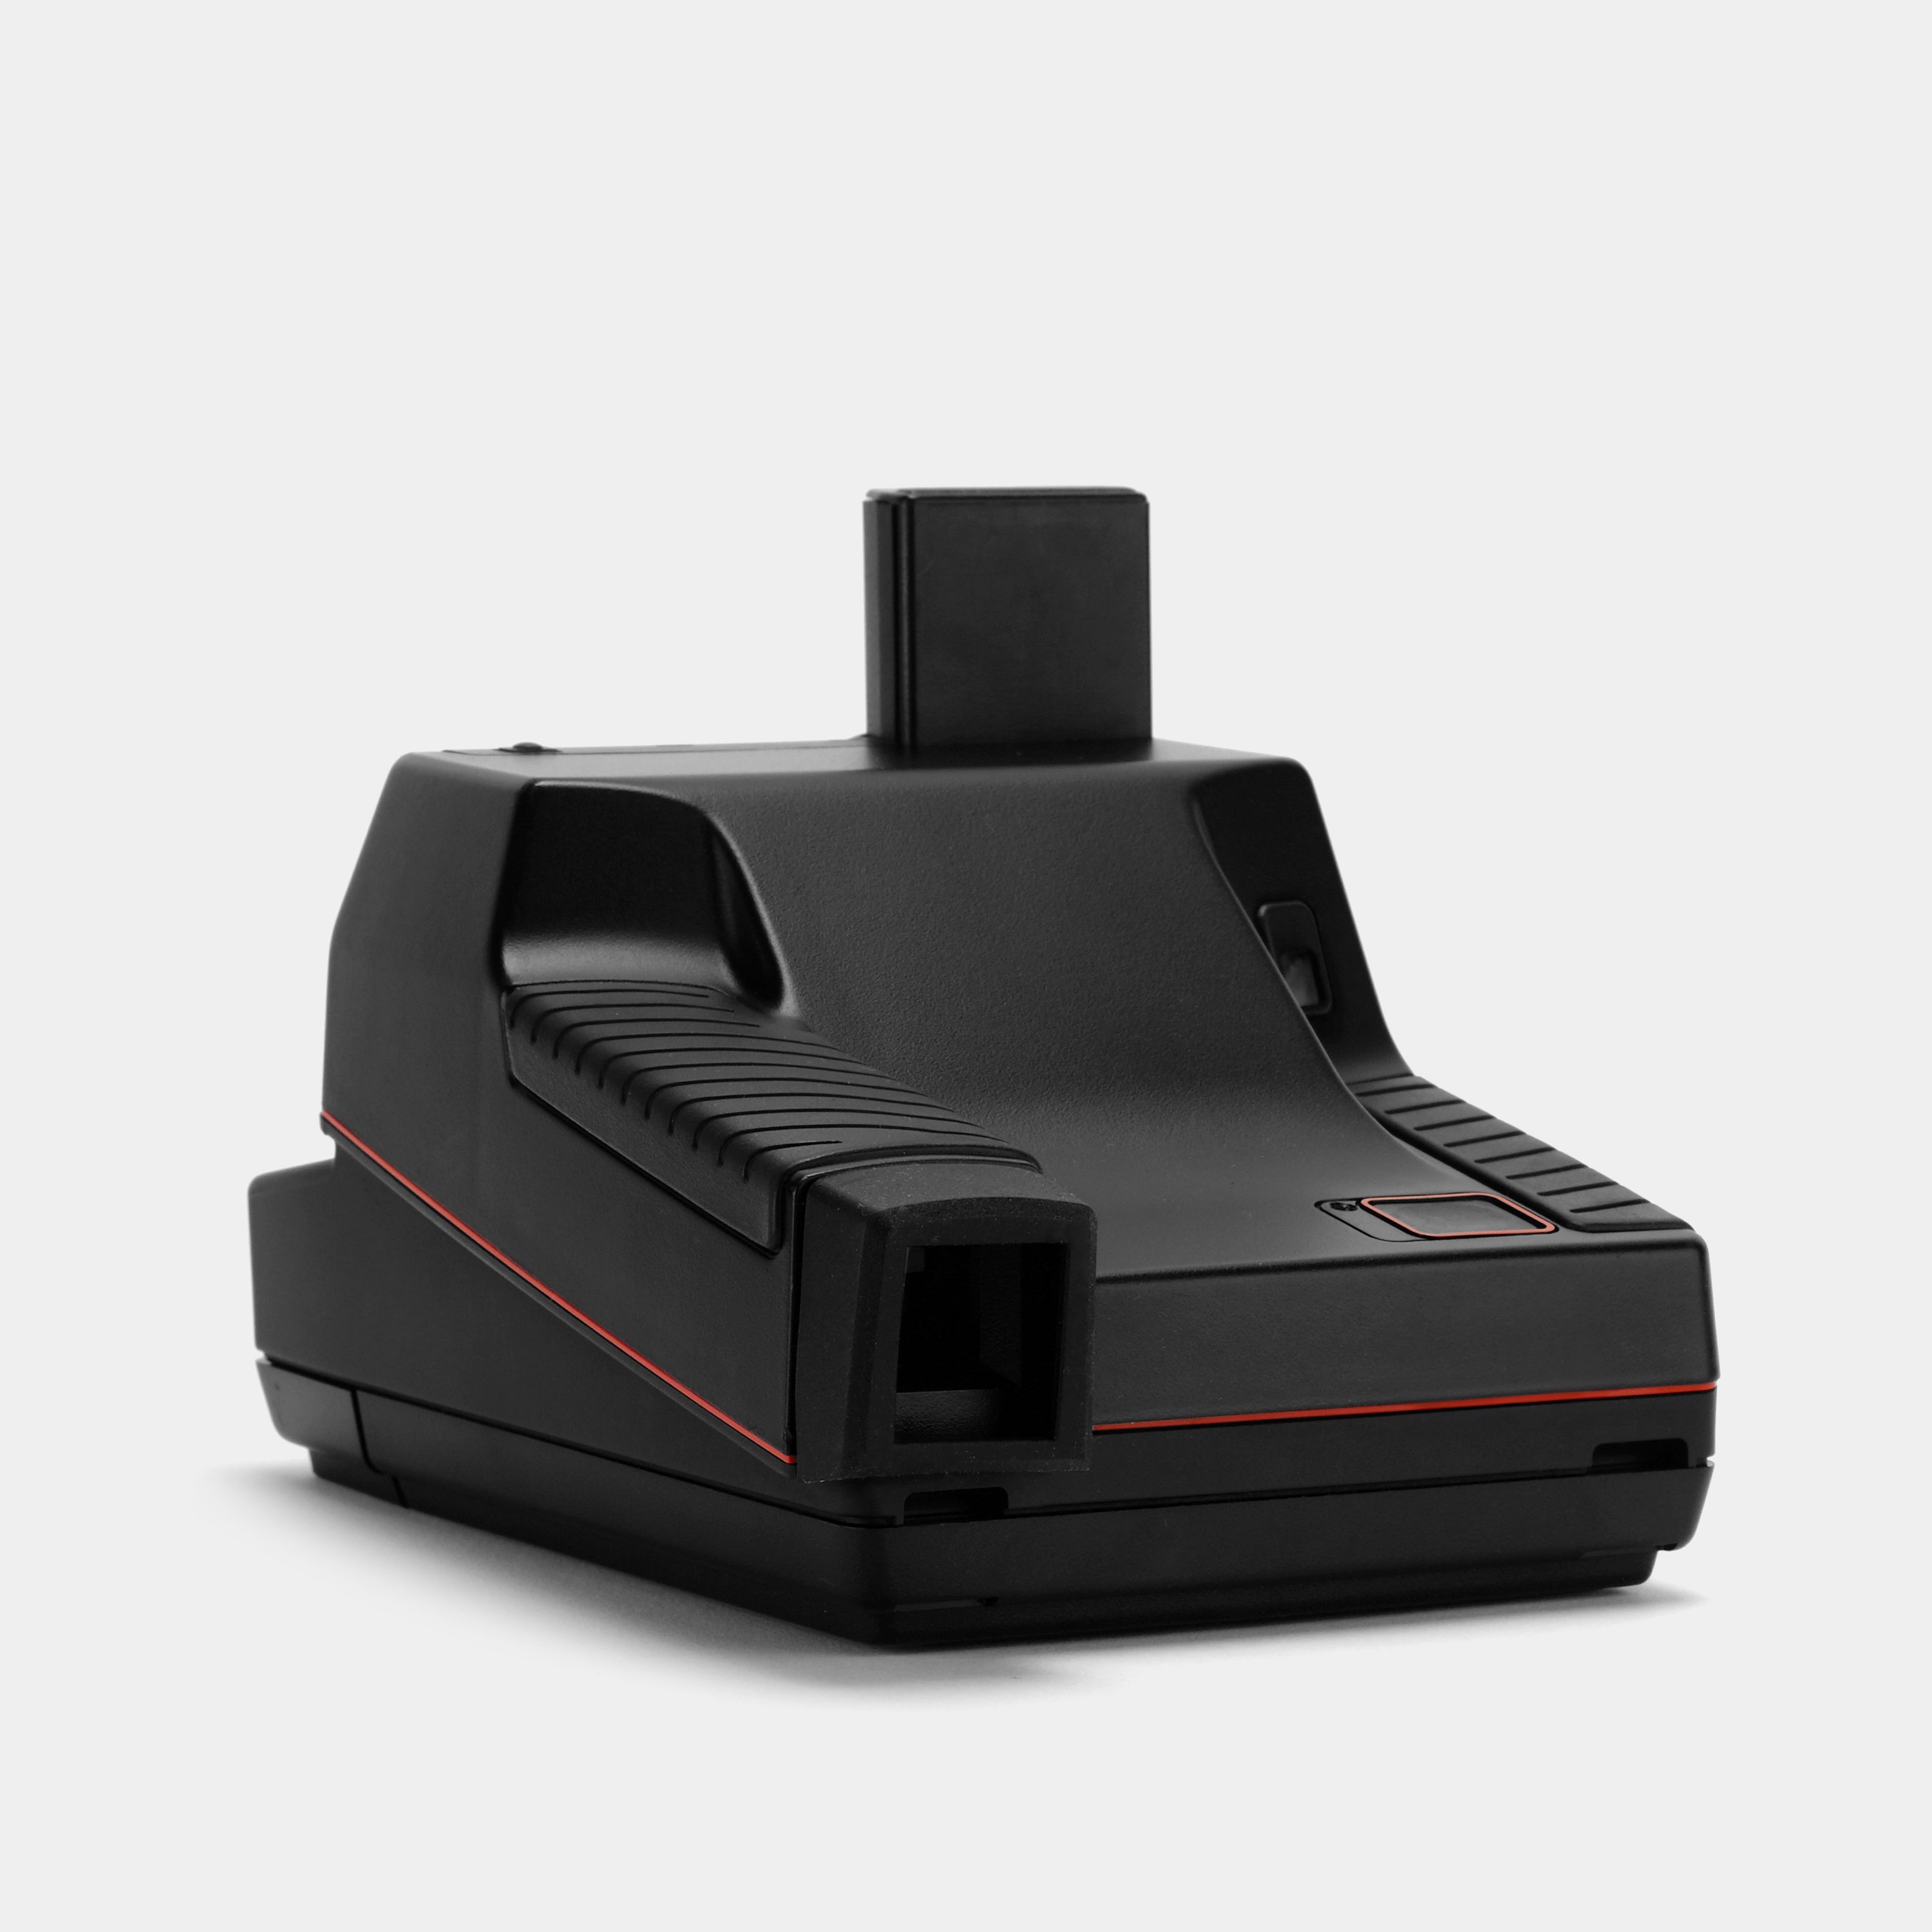 Polaroid 600 Impulse AutoFocus Anthracite Black Instant Film Camera